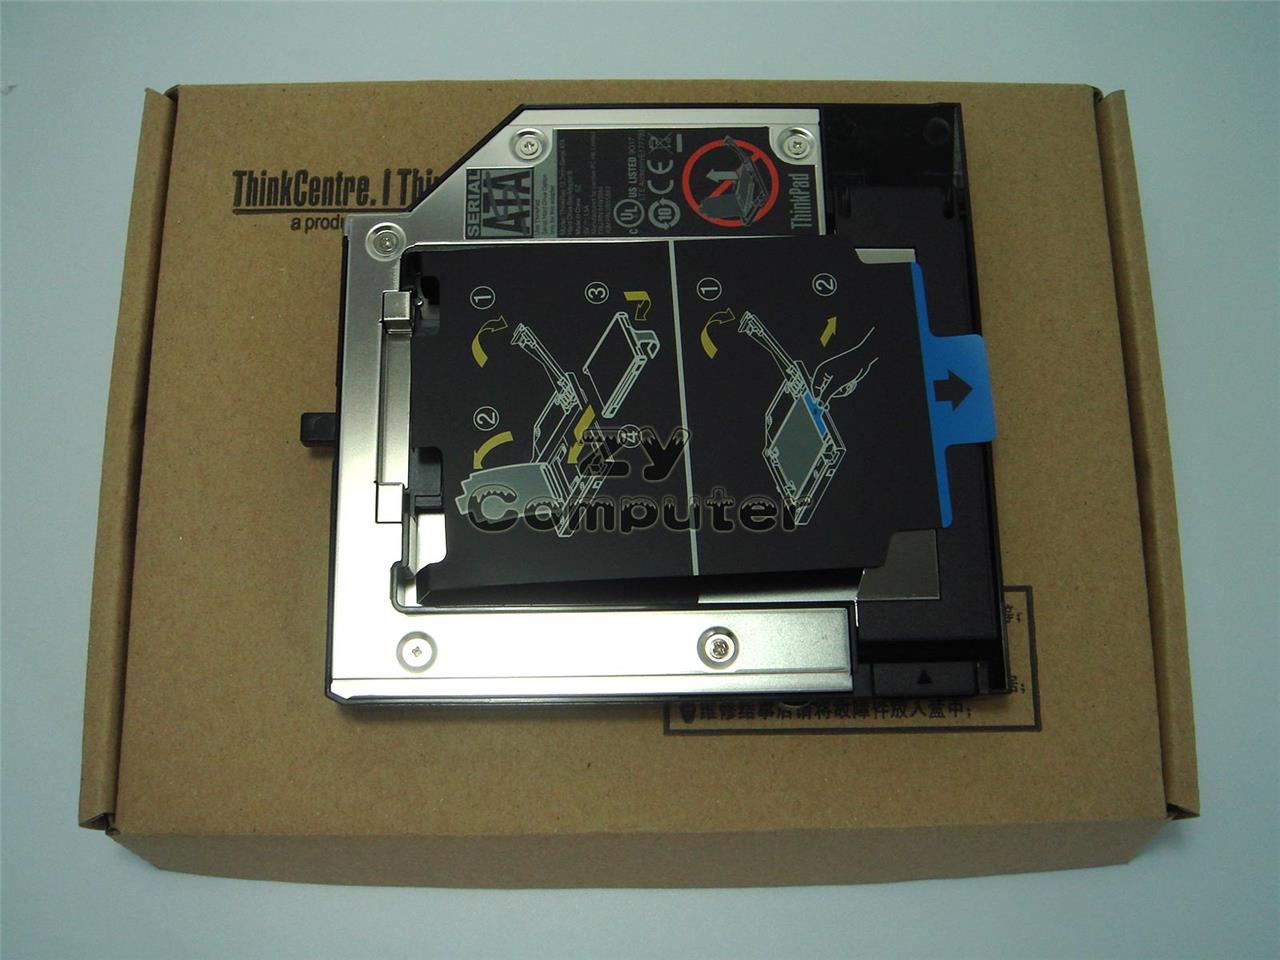 Thinkpad Serial Ata Hard Drive Bay Adapter W530